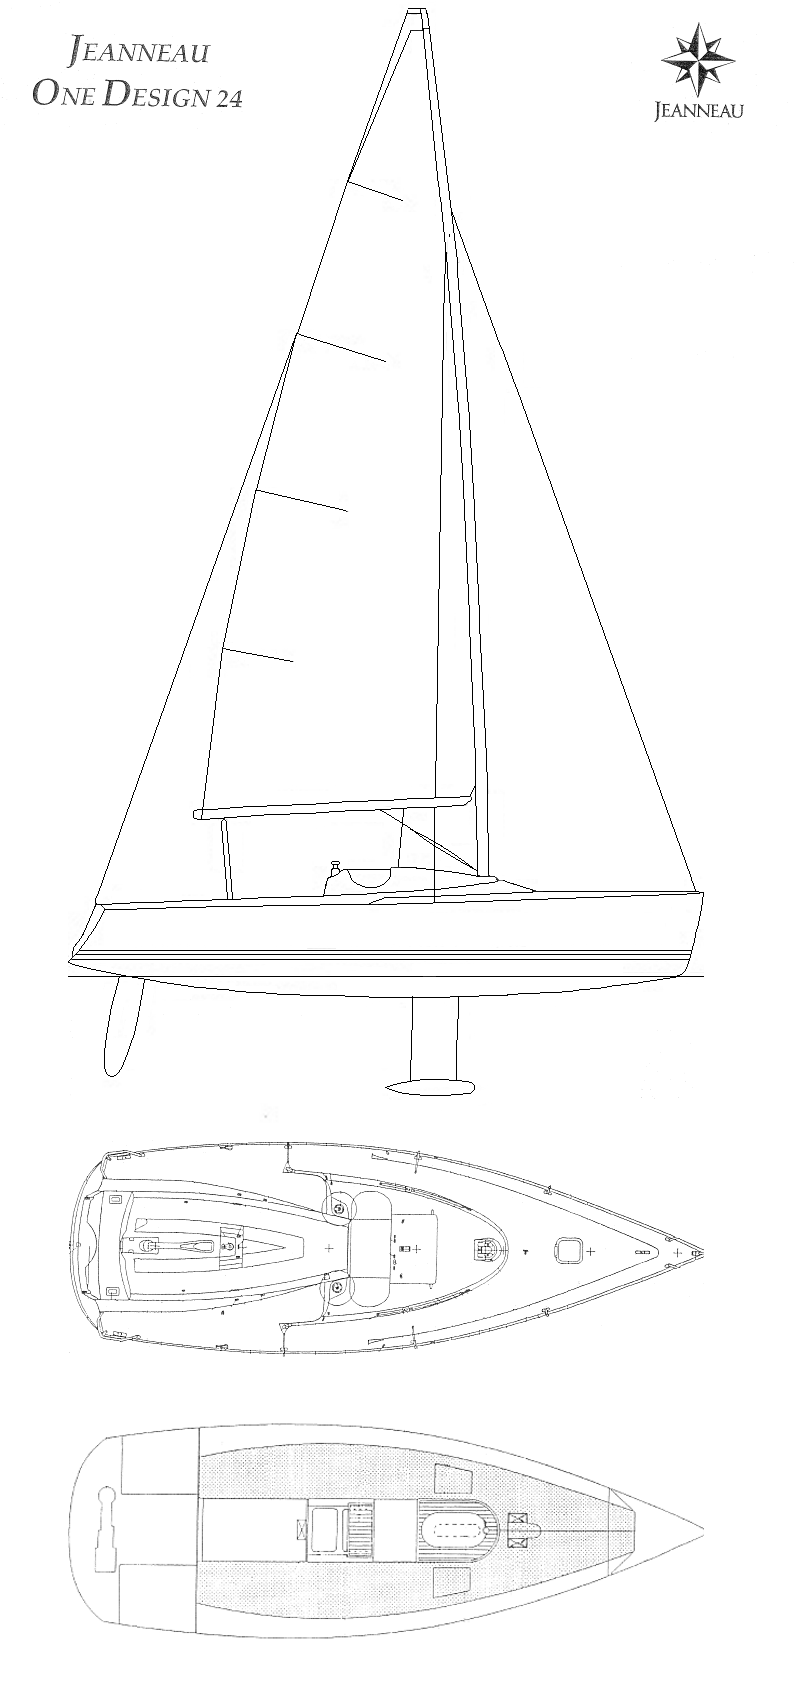 Jeanneau JOD 24 One Design sailboatdata complete